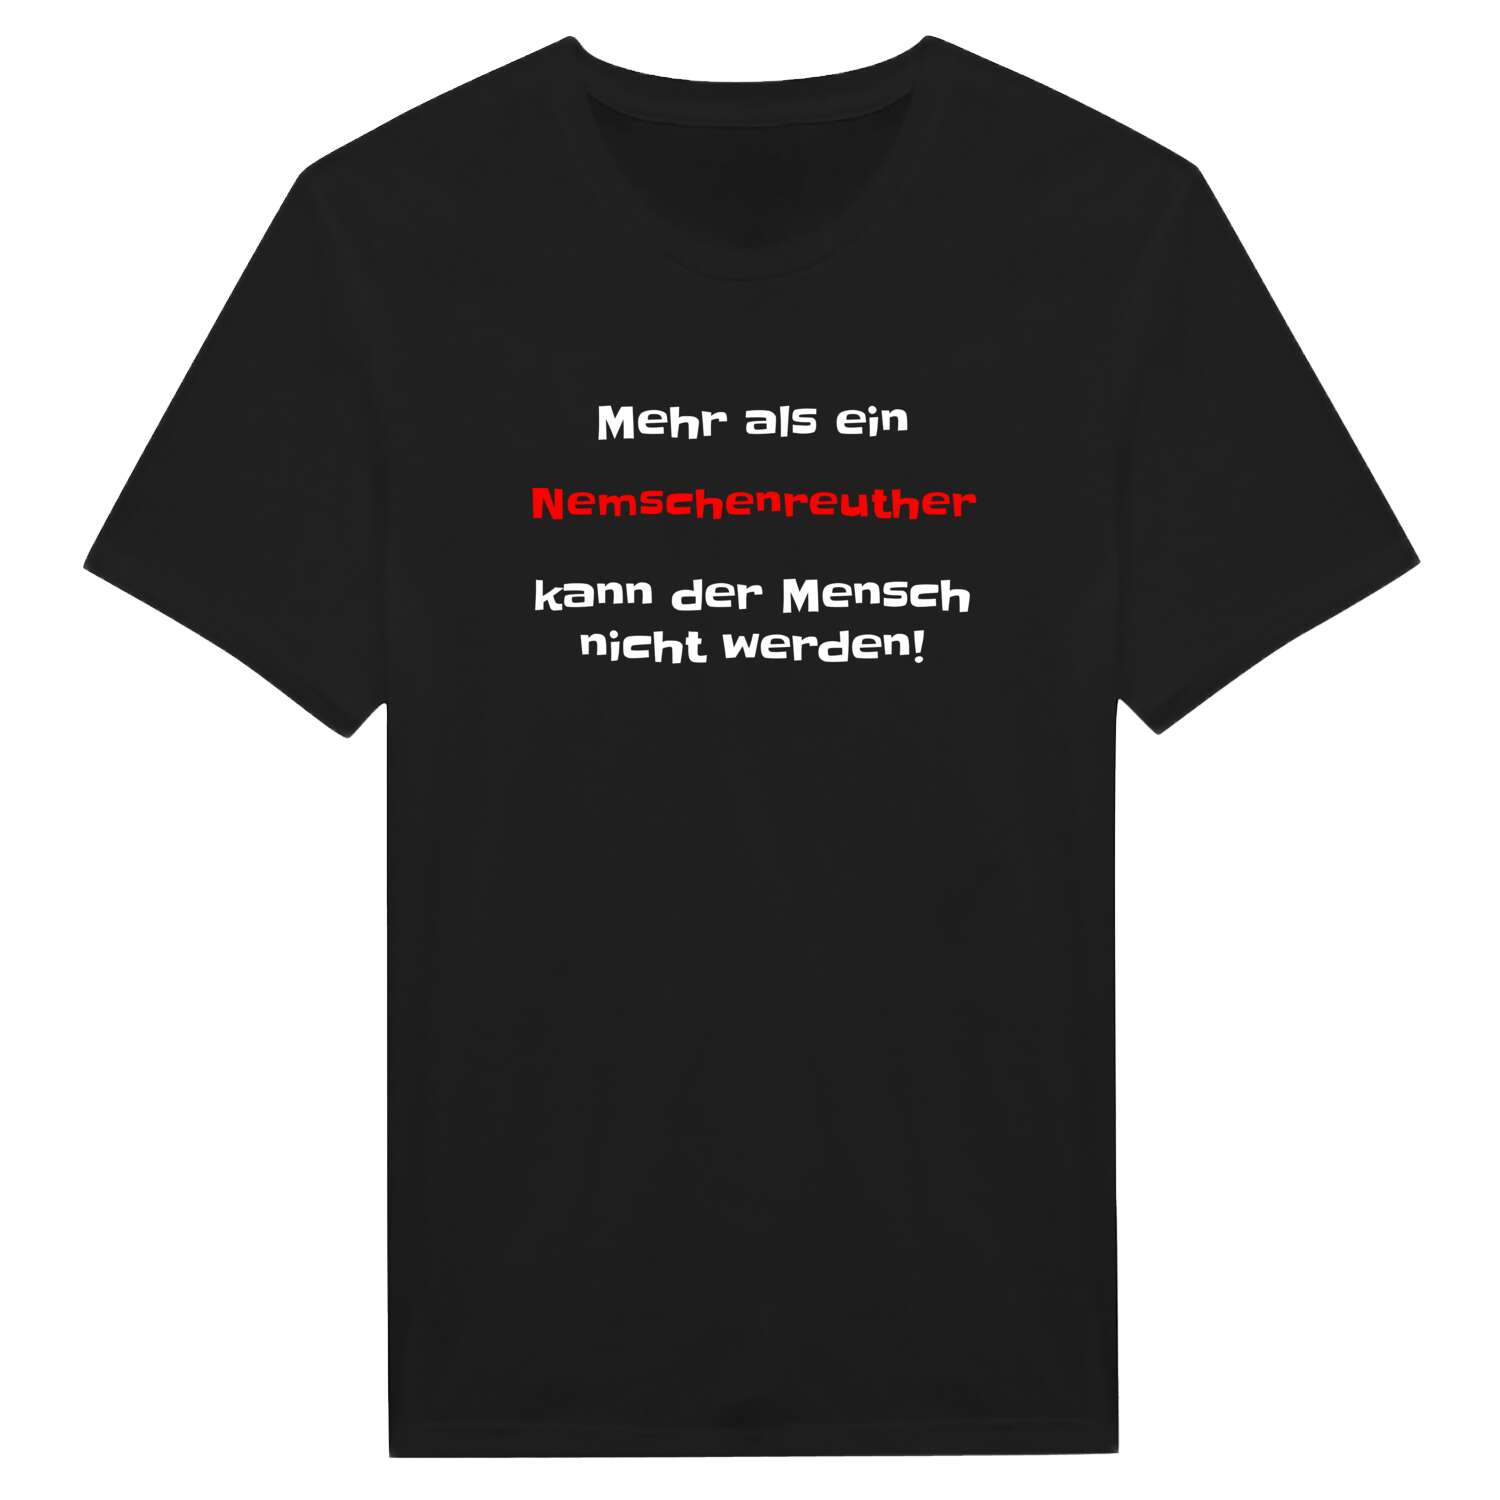 Nemschenreuth T-Shirt »Mehr als ein«